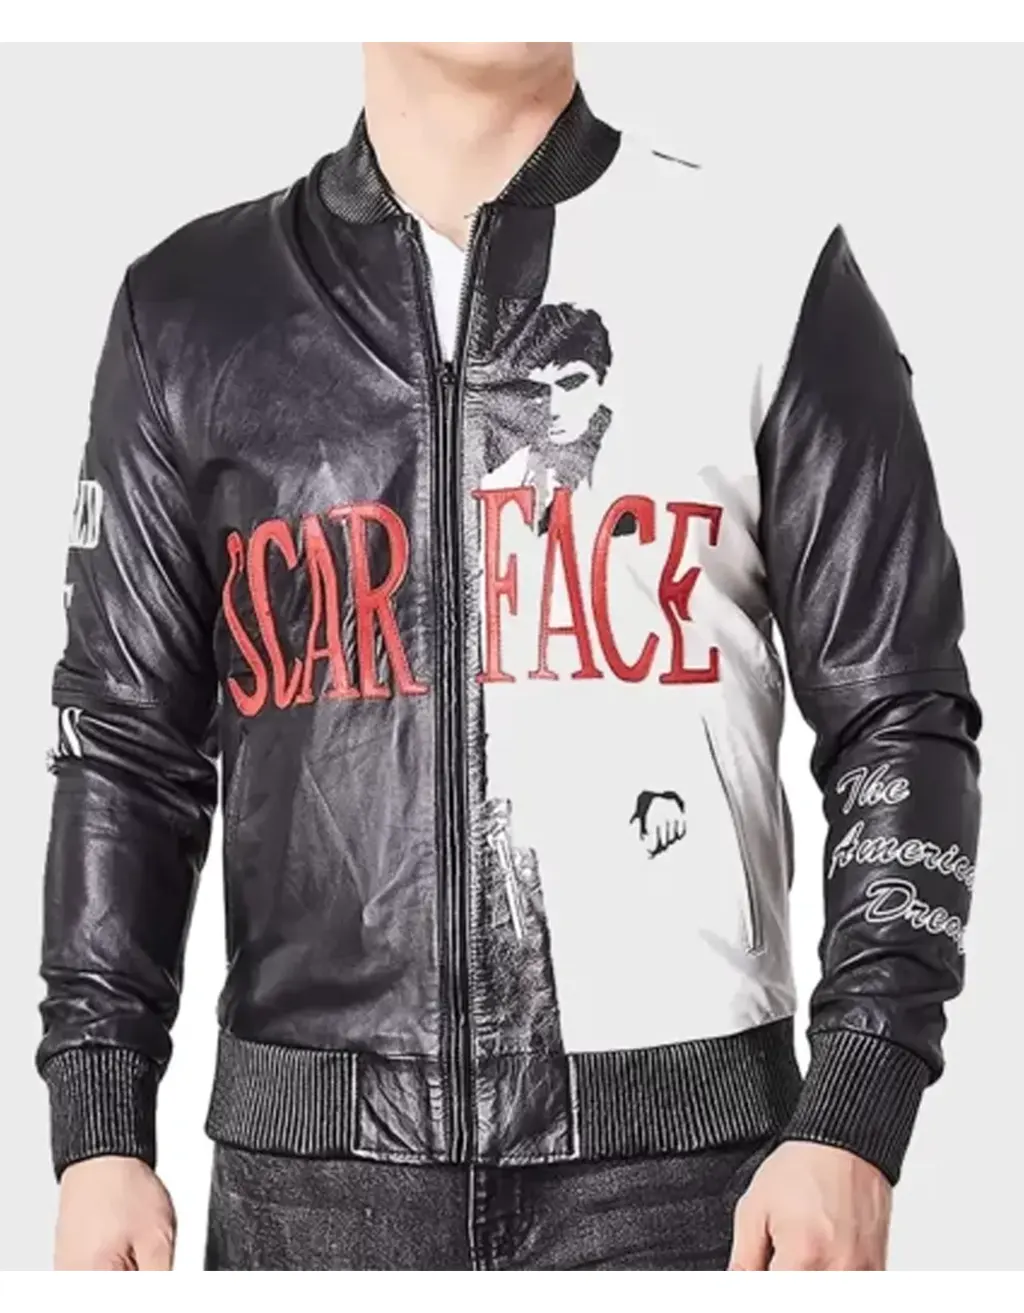 Scarface Tony Montana Leather Bomber Jacket